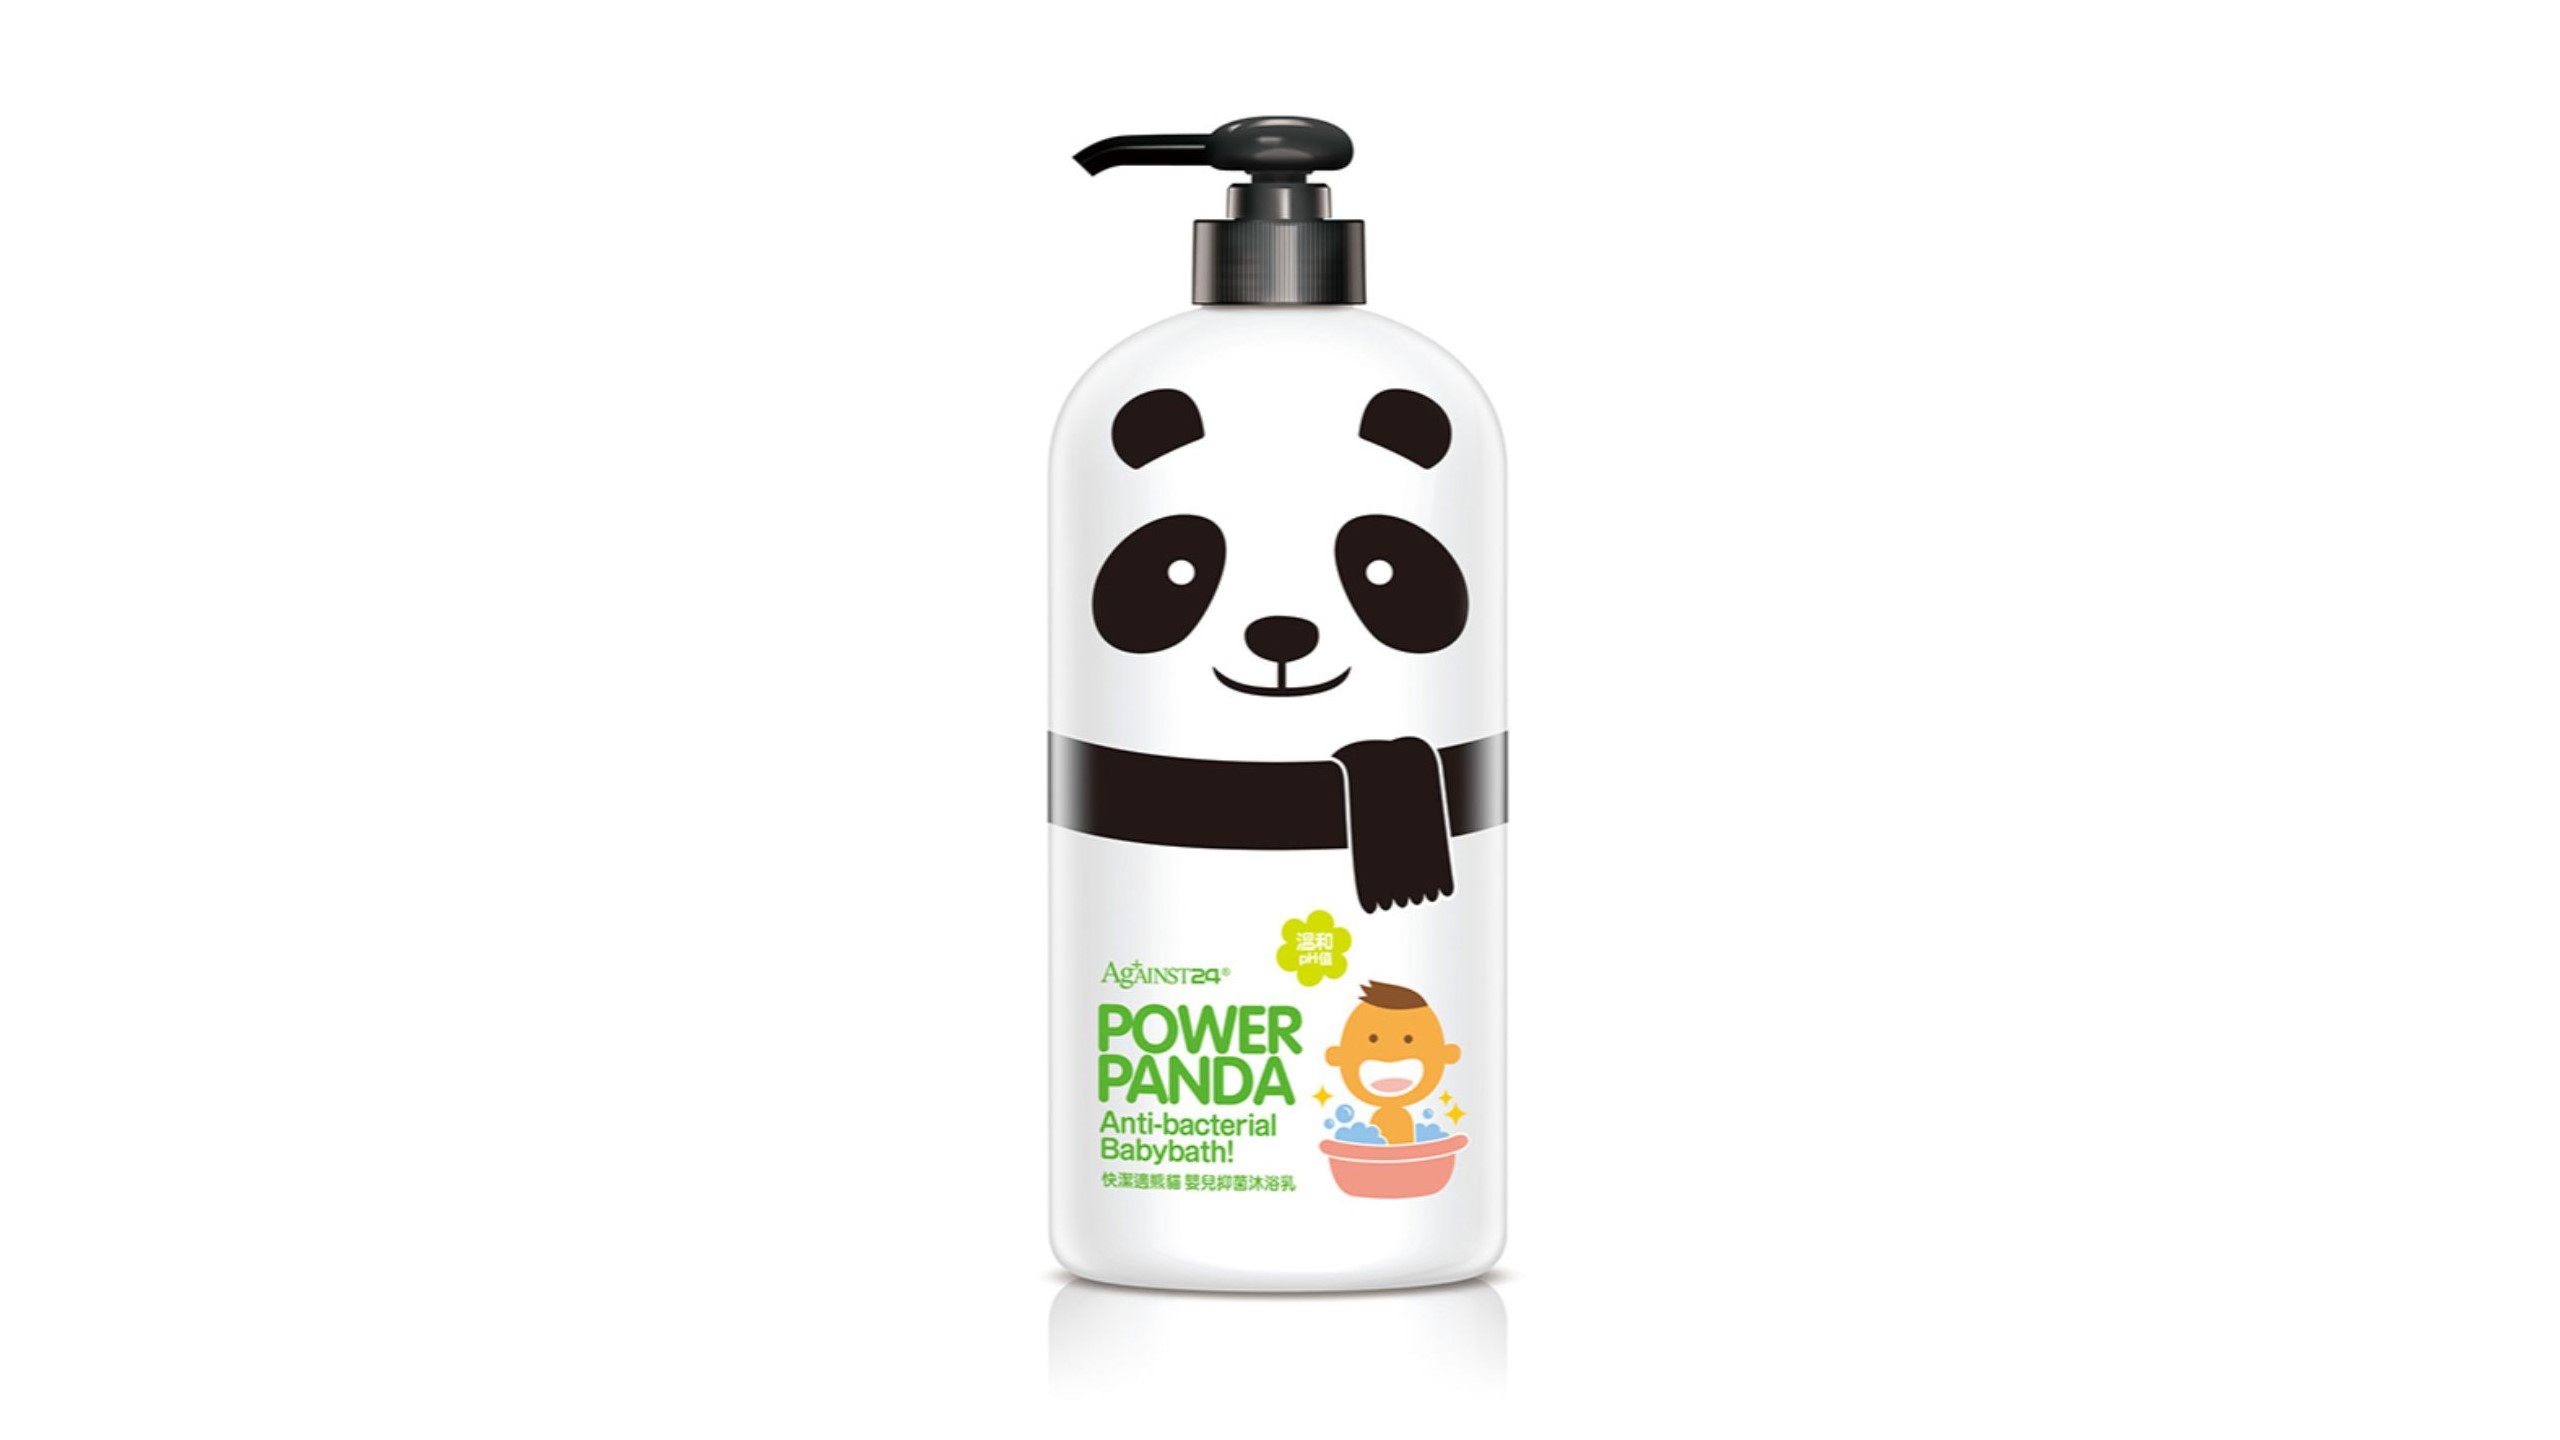 Against24 Power Panda Anti-Bacterial Babybath 650ml